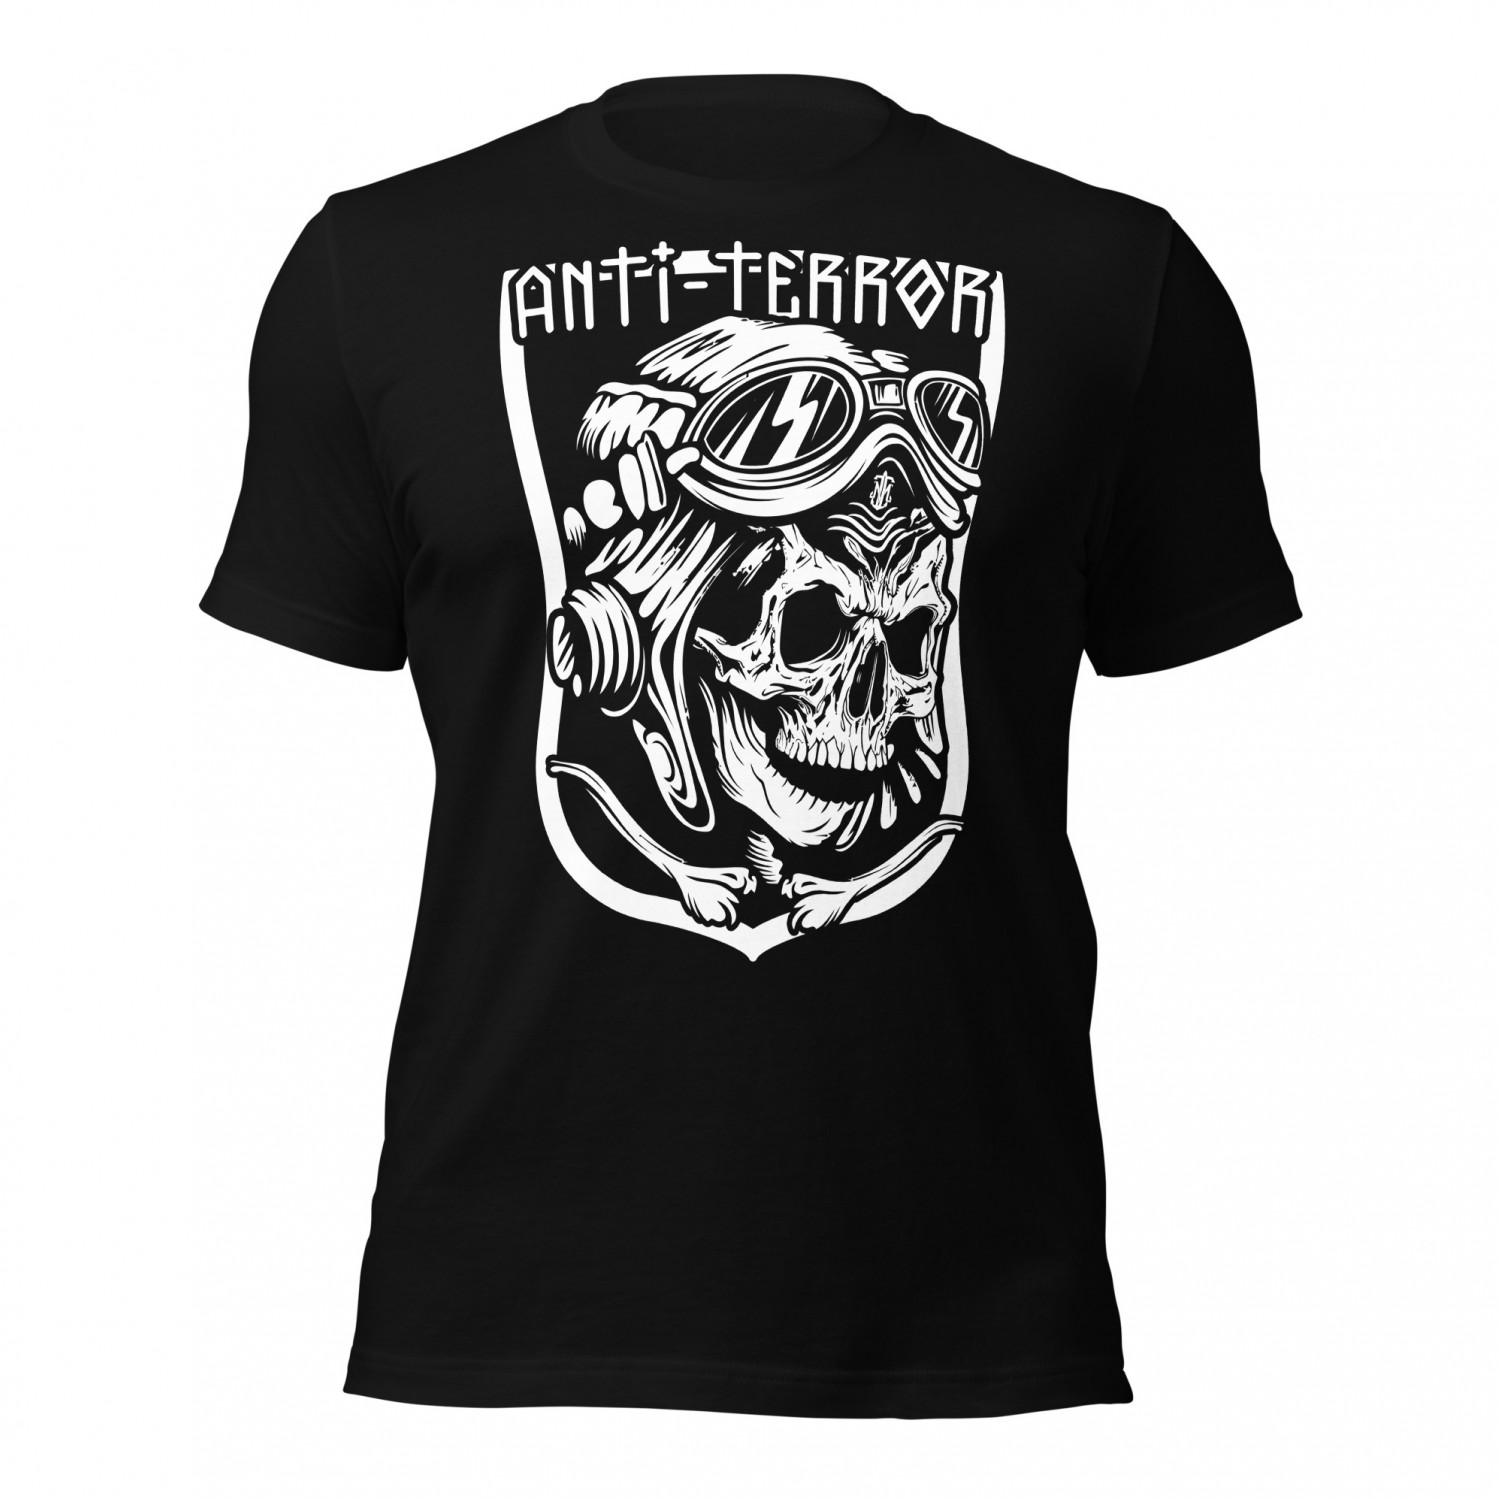 Buy T-shirt - Anti Terror